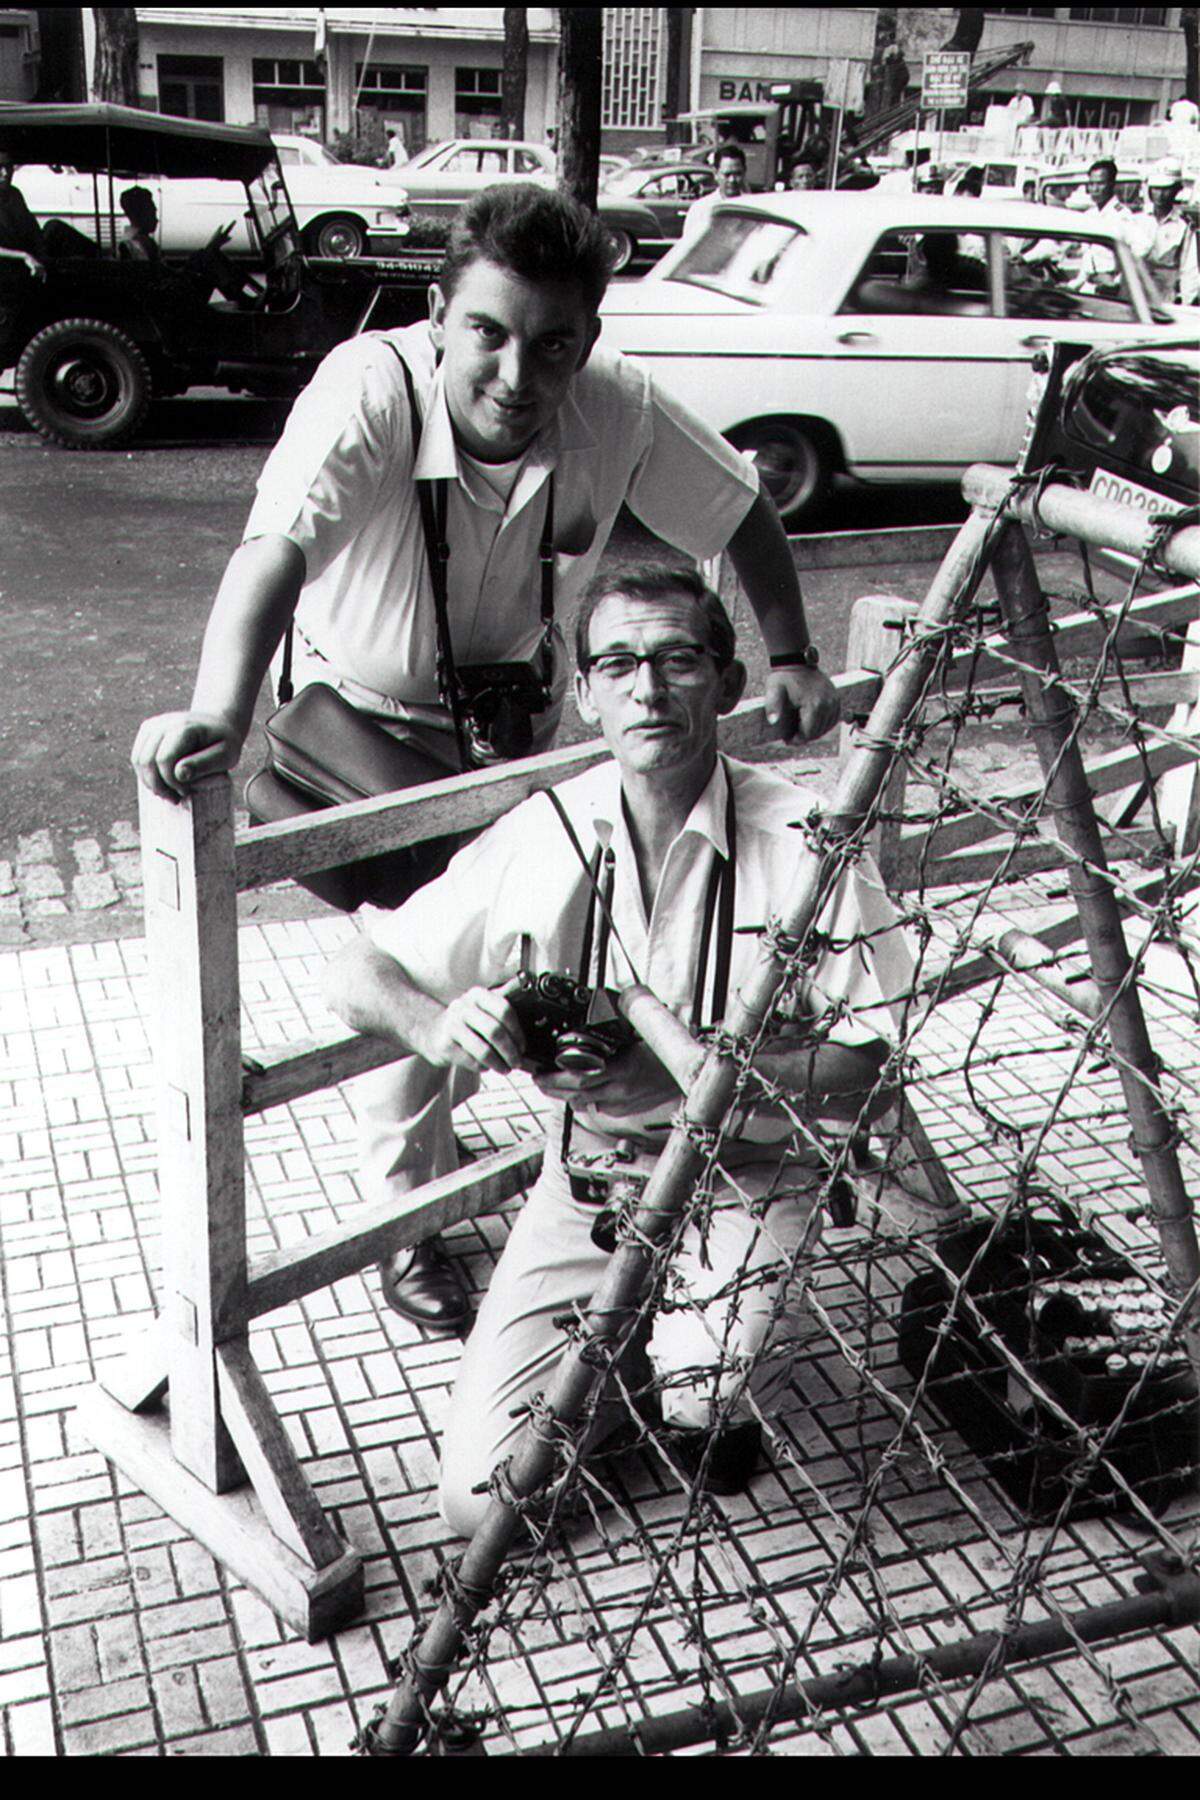 Faas sorgte auch für die Veröffentlichung des berühmten Fotos seines AP-Kollegen Nick Ut vom Juni 1972, das die vor einem Napalmangriff fliehende neunjährige Kim Phuc zeigt. Einige Kollegen hatten Bedenken, das Bild zu veröffentlichen, da sich das kleine, schwer verletzte Mädchen die brennenden Kleider vom Leib gerissen hatte und völlig nackt war. Das Bild ging um die Welt und brachte Ut ebenfalls einen Pulitzerpreis ein. Im Bild: Horst Faas, und Fotografenkollege Larry Burrows vom Magazin "Life" 1964 in Saigon